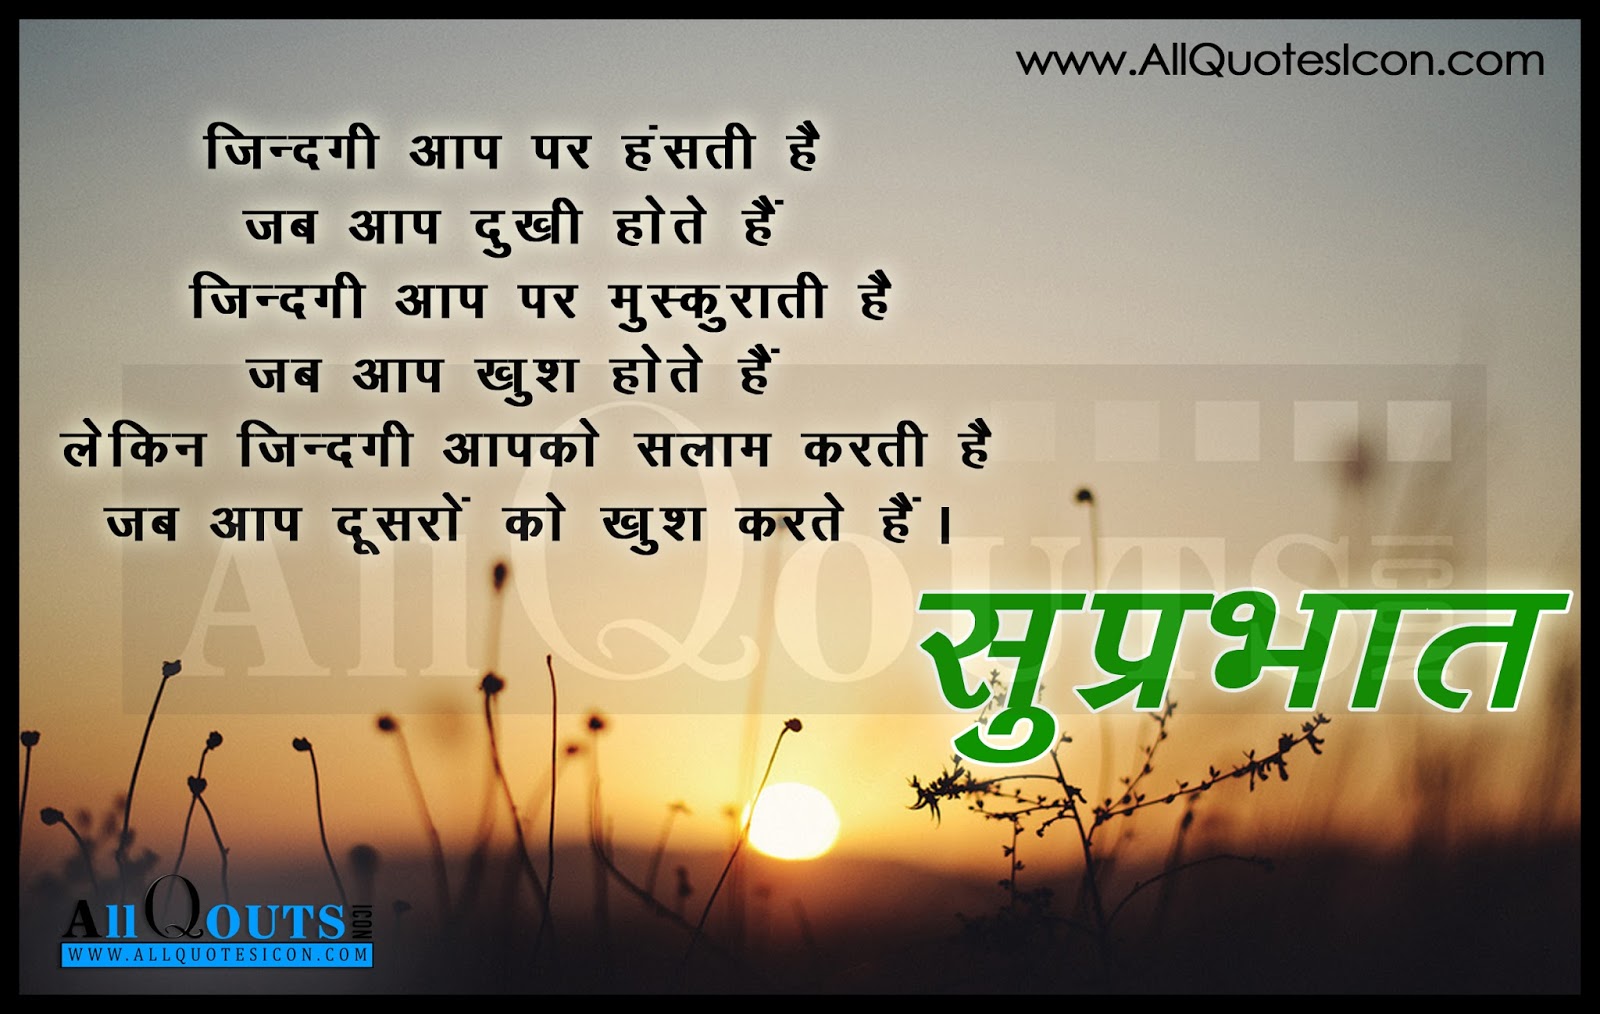 Good Morning Love Quotes In Hindi Hindi Love Quotes Good Good